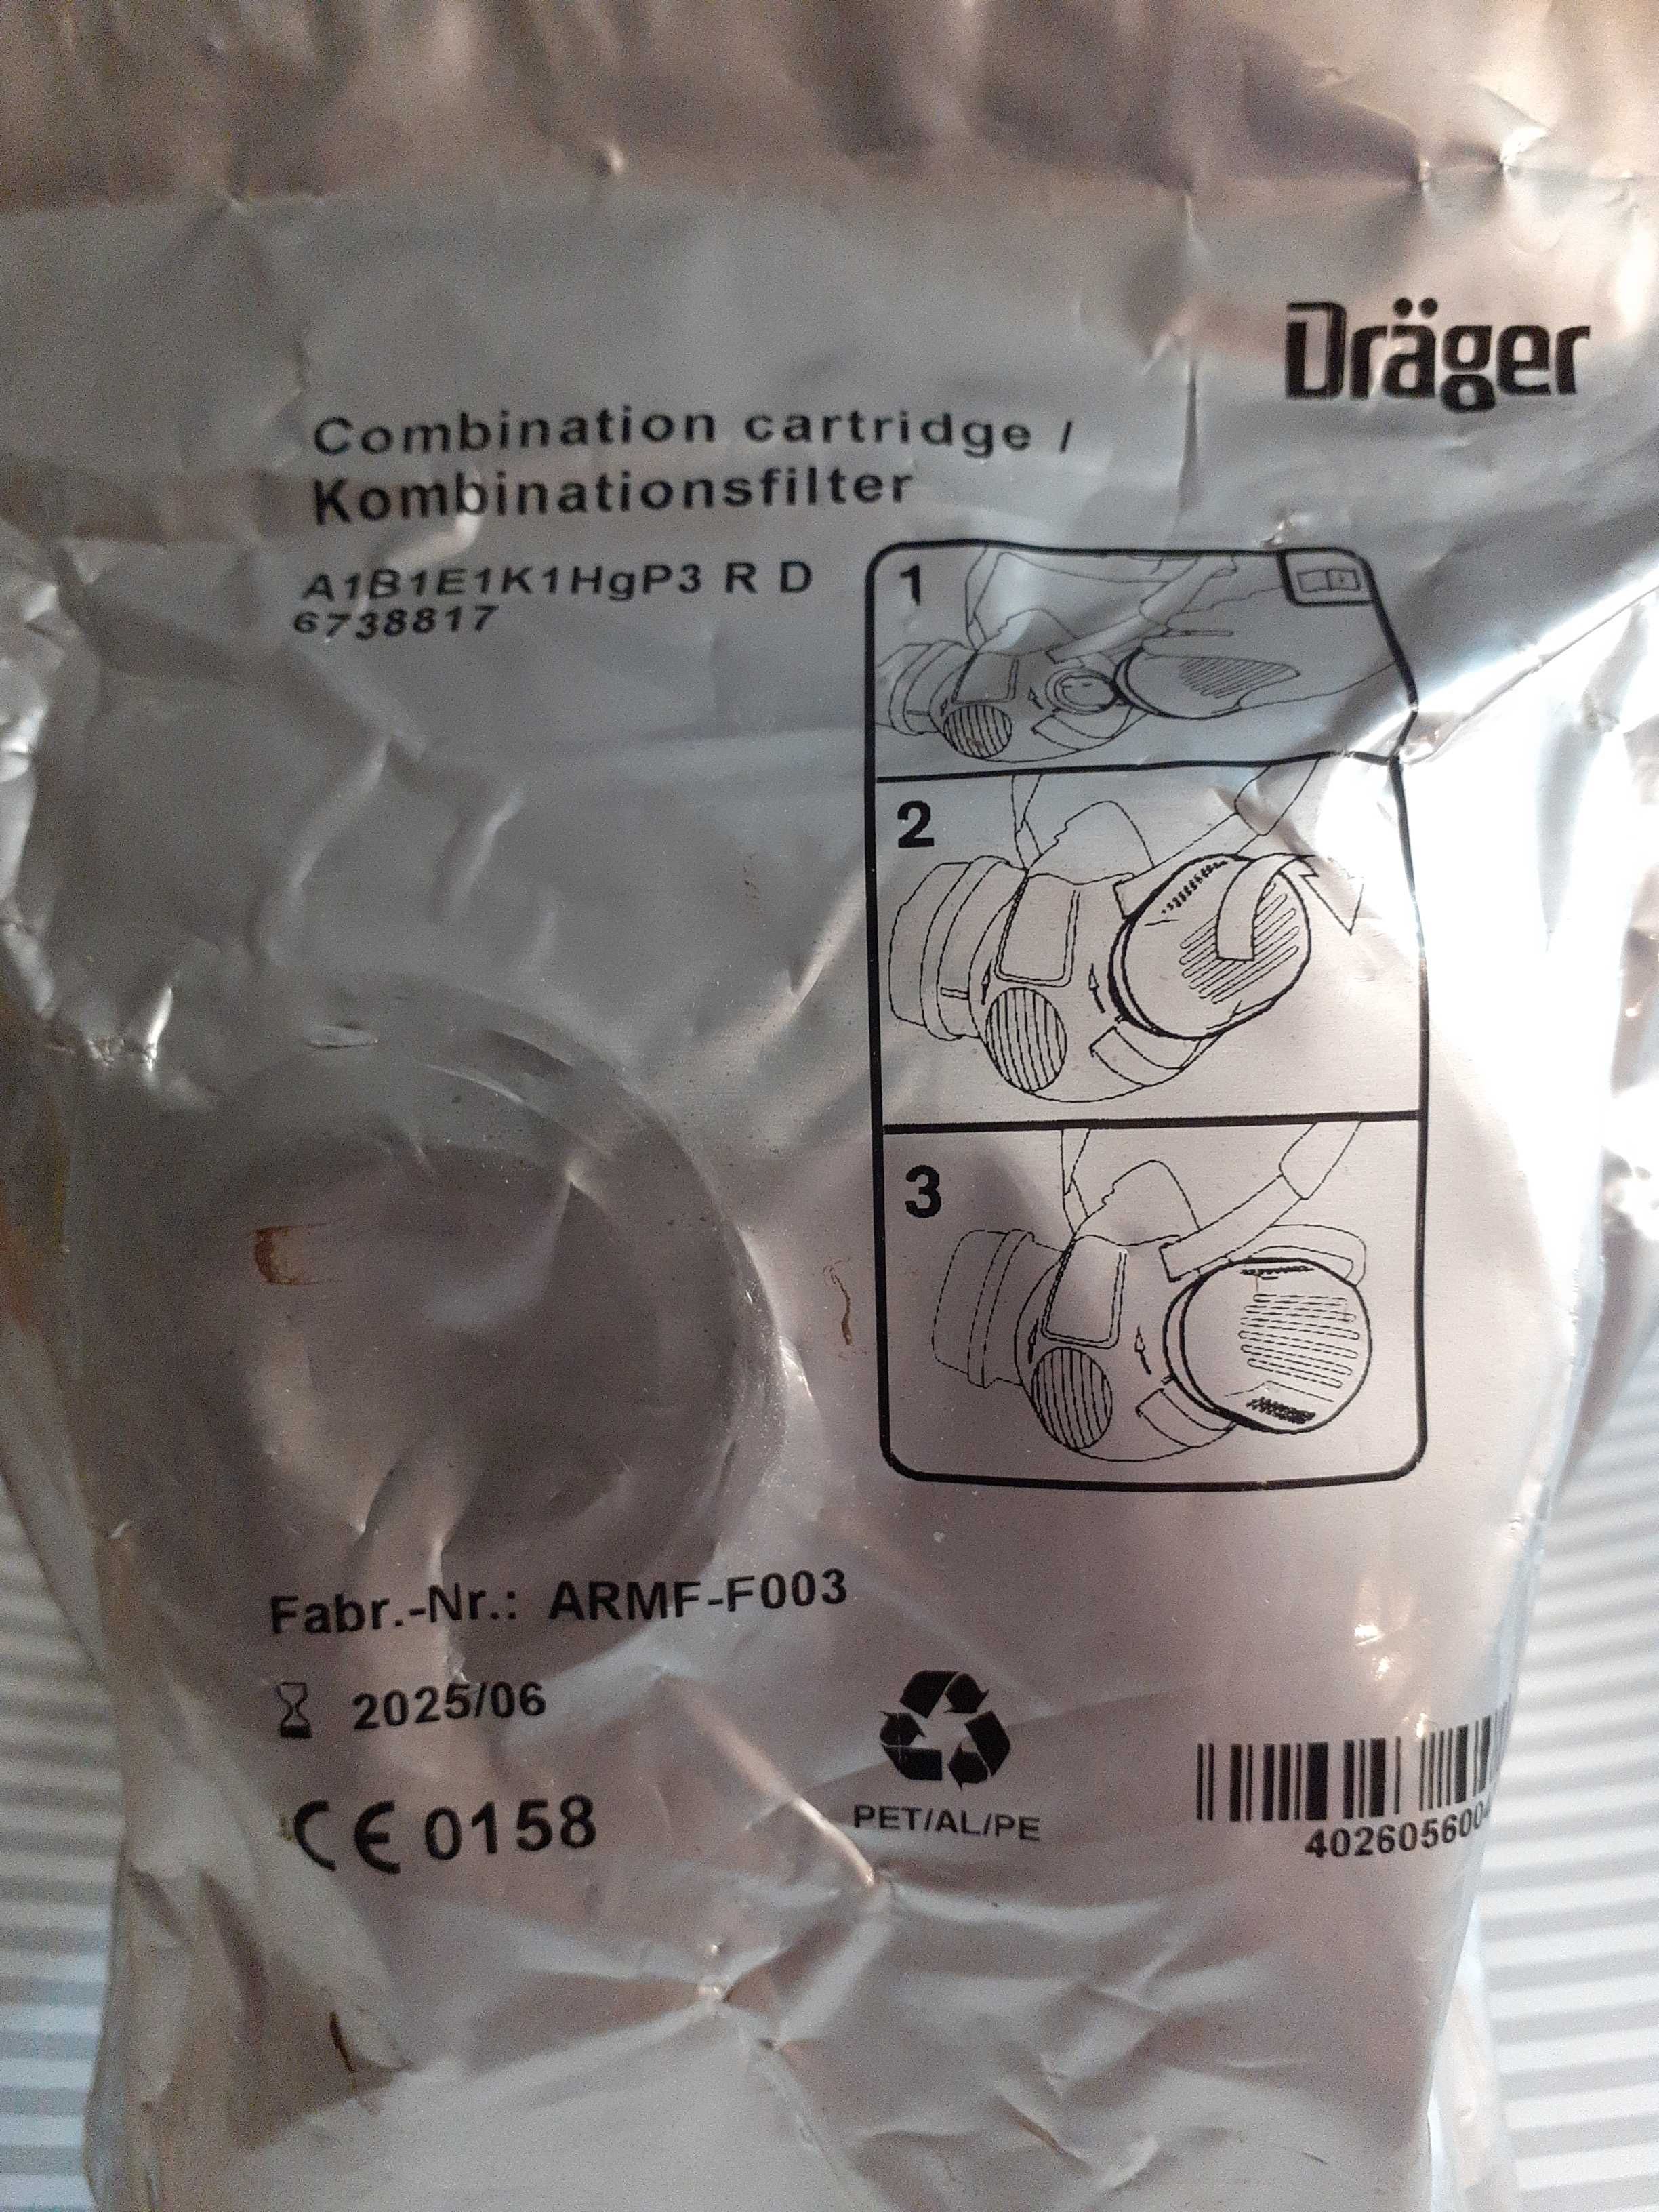 Filtro - Drager - Ver na descrição o modelo